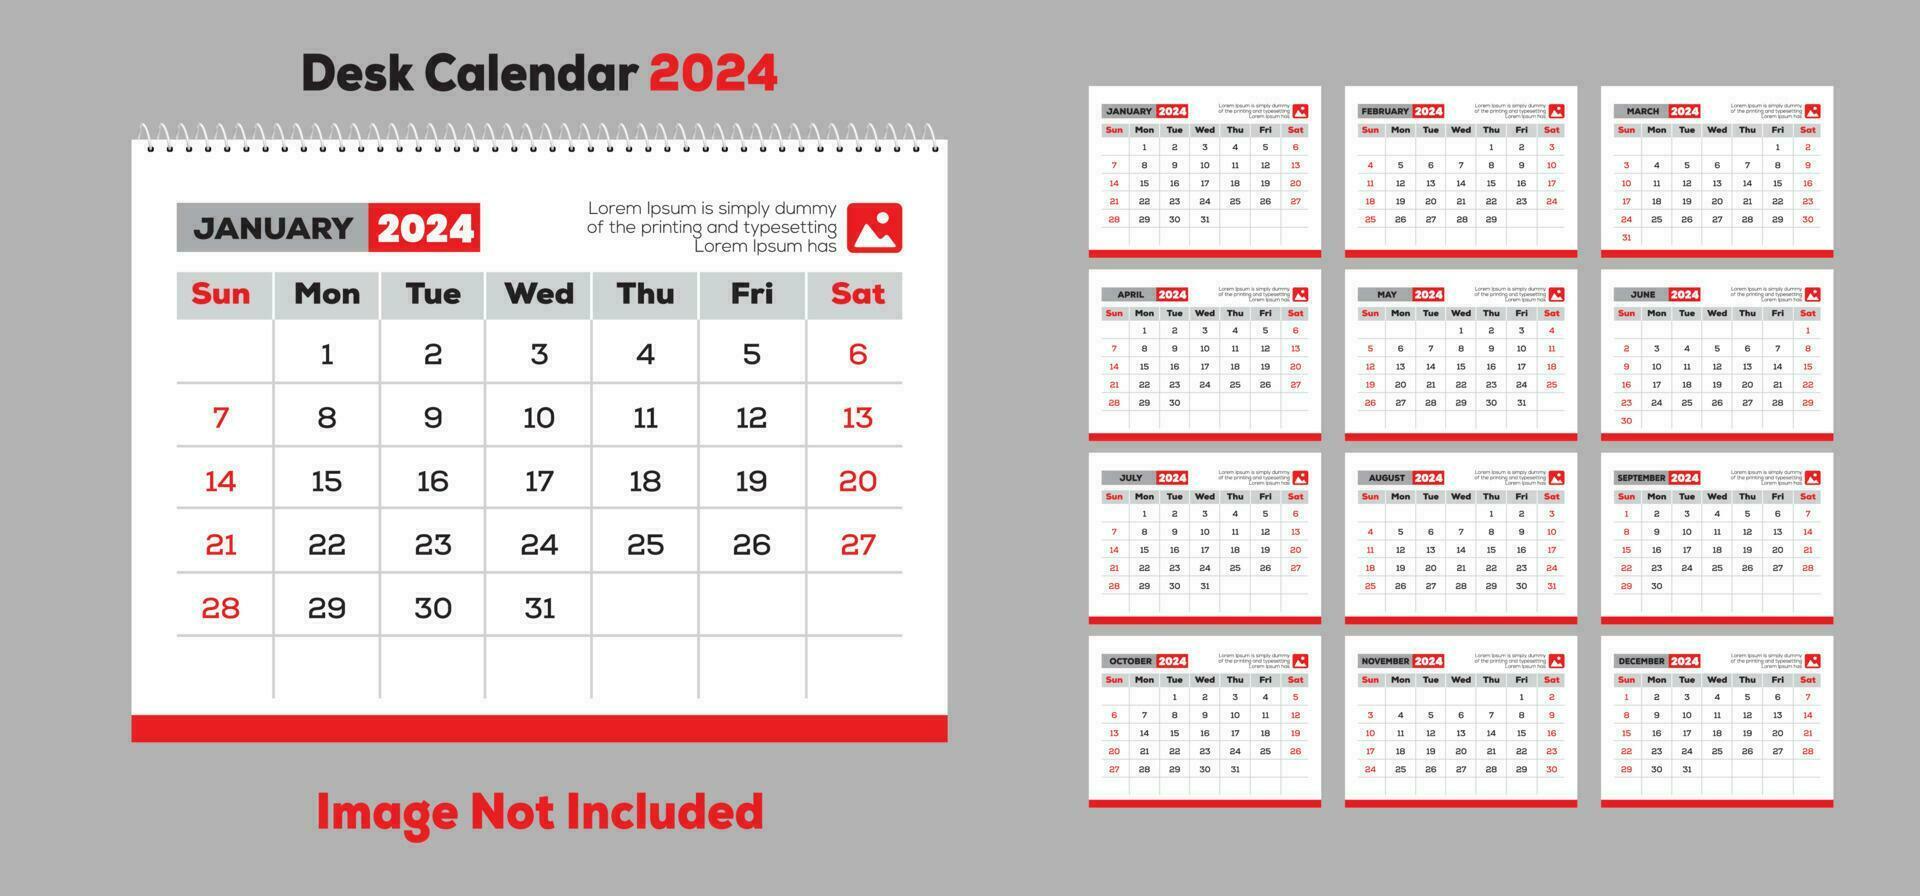 Free desk calendar 2024 vector